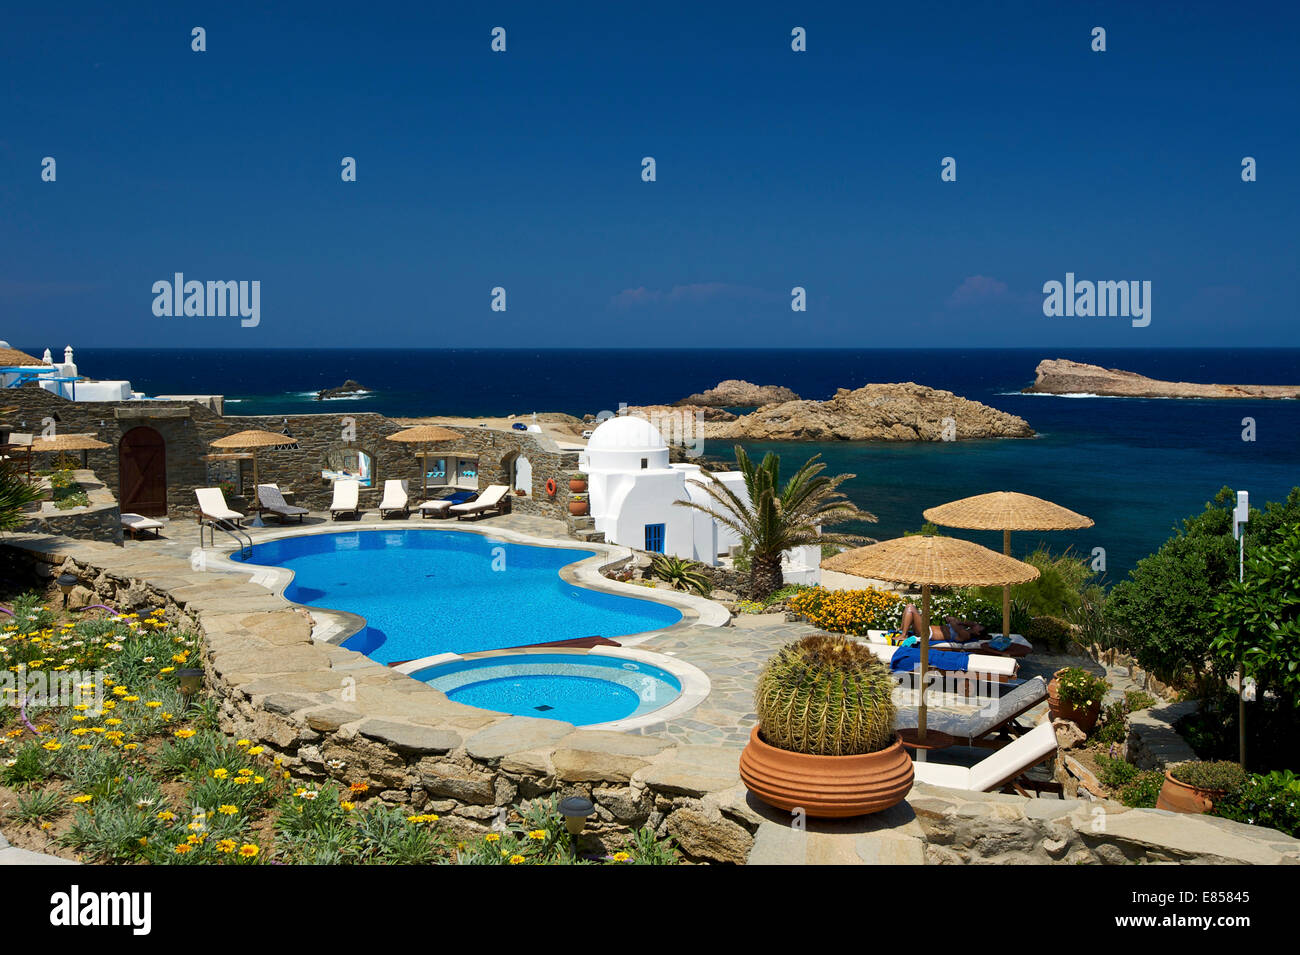 Piscine de l'hôtel, l'hôtel Thea, Agios Sostis, Mykonos, Cyclades, Grèce Banque D'Images